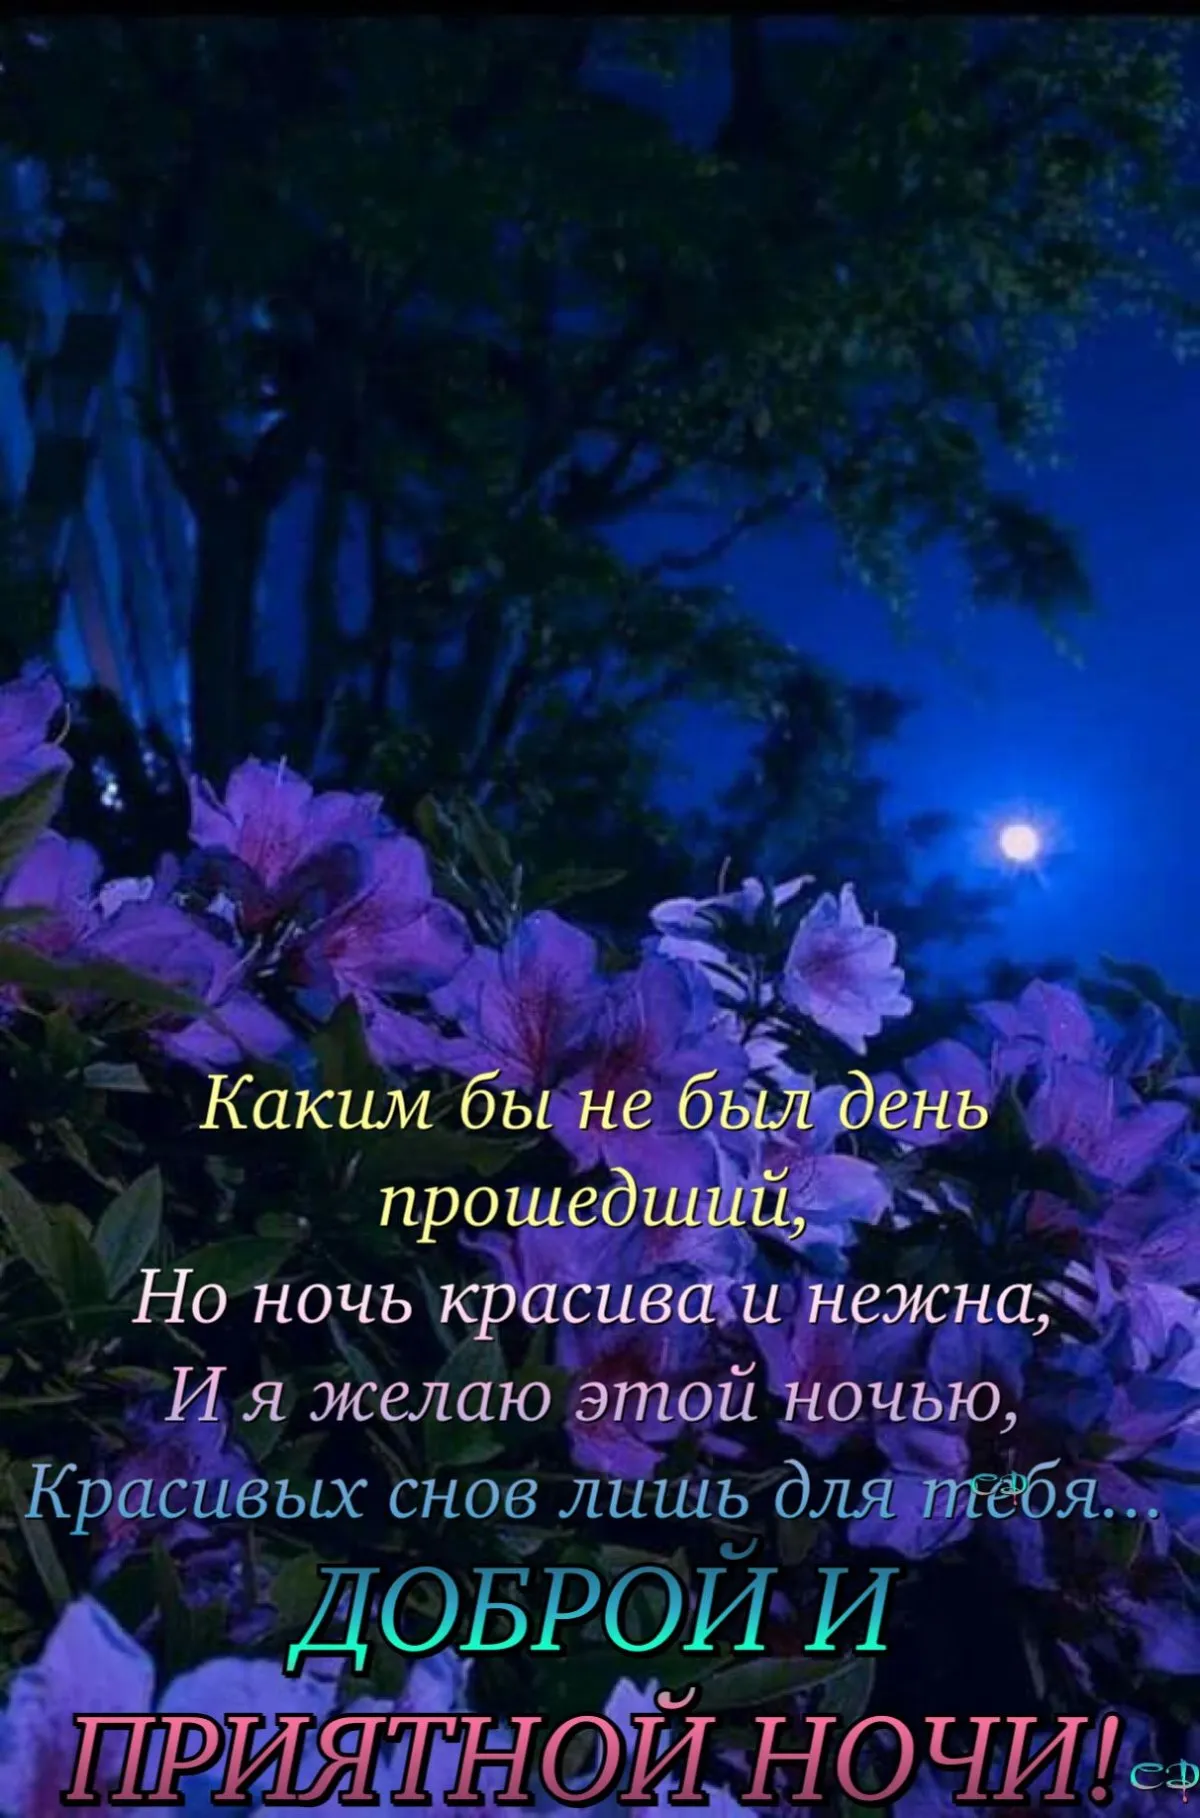 Картинки доброй ночи православные - 82 фото